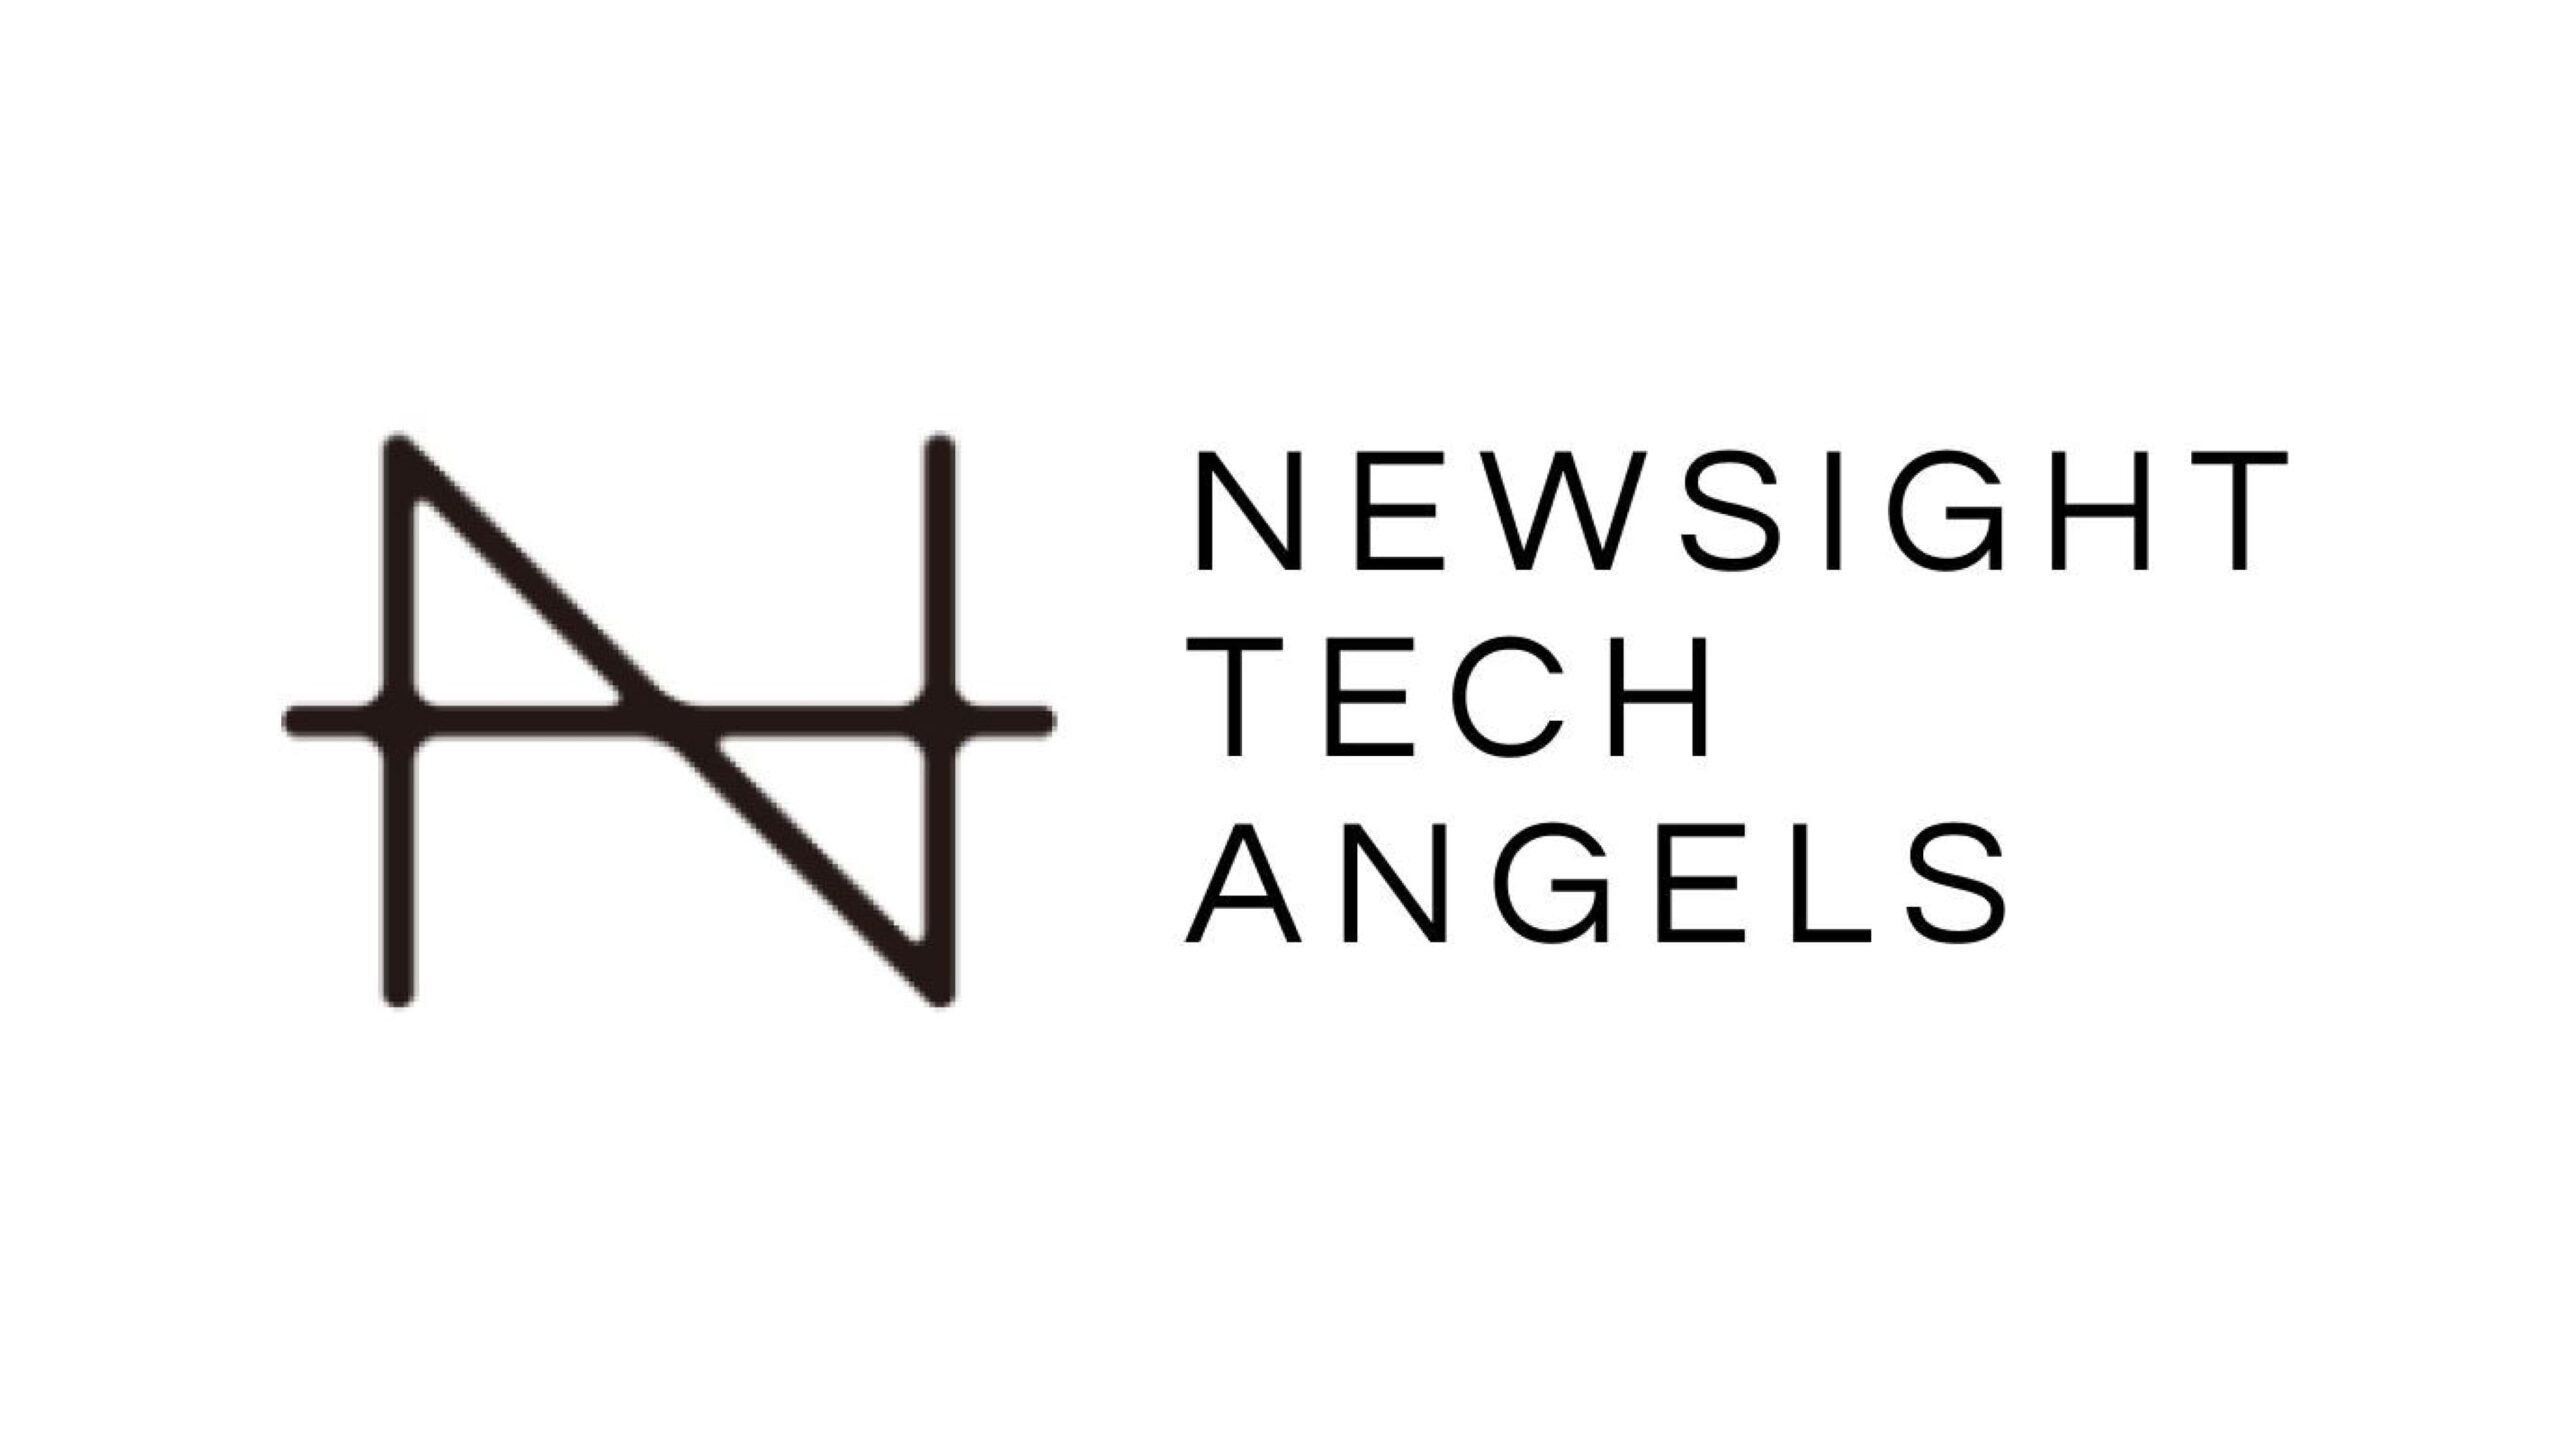 株式会社Newsight Tech Angels、遺伝子治療のリーディングカンパニーEyegenex社への出資を実施